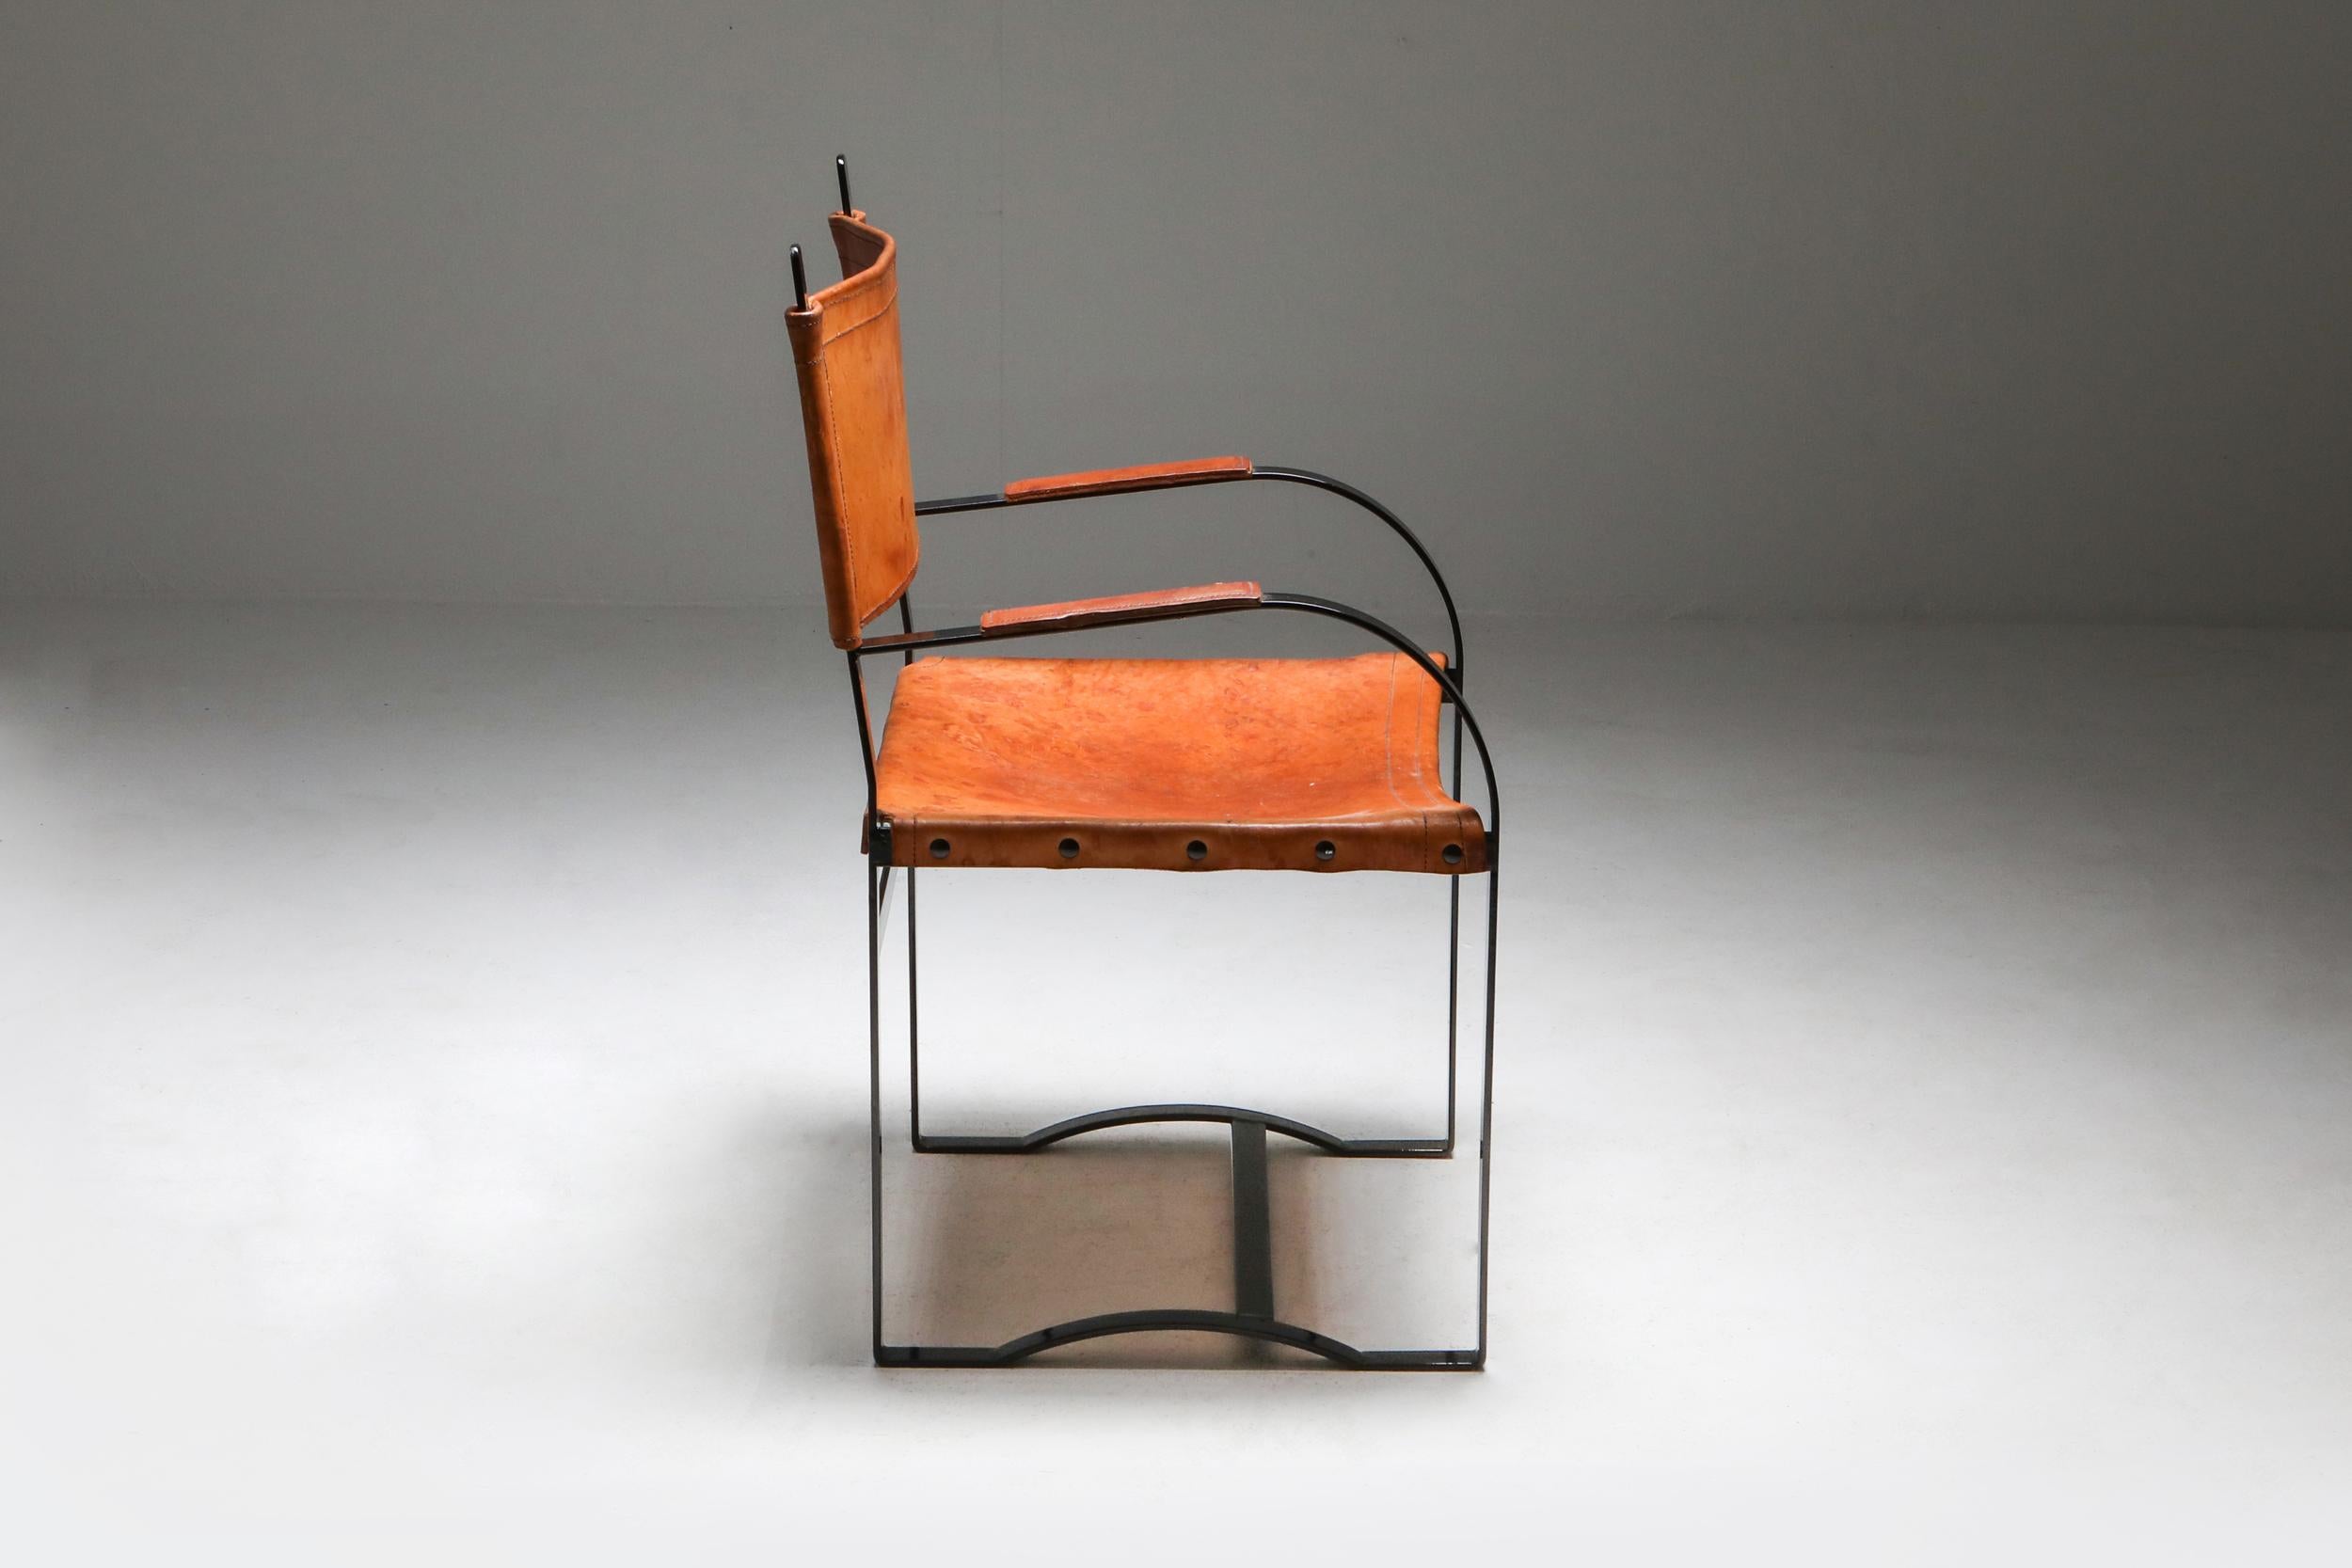 European Rustic Modern Cognac Leather Chair